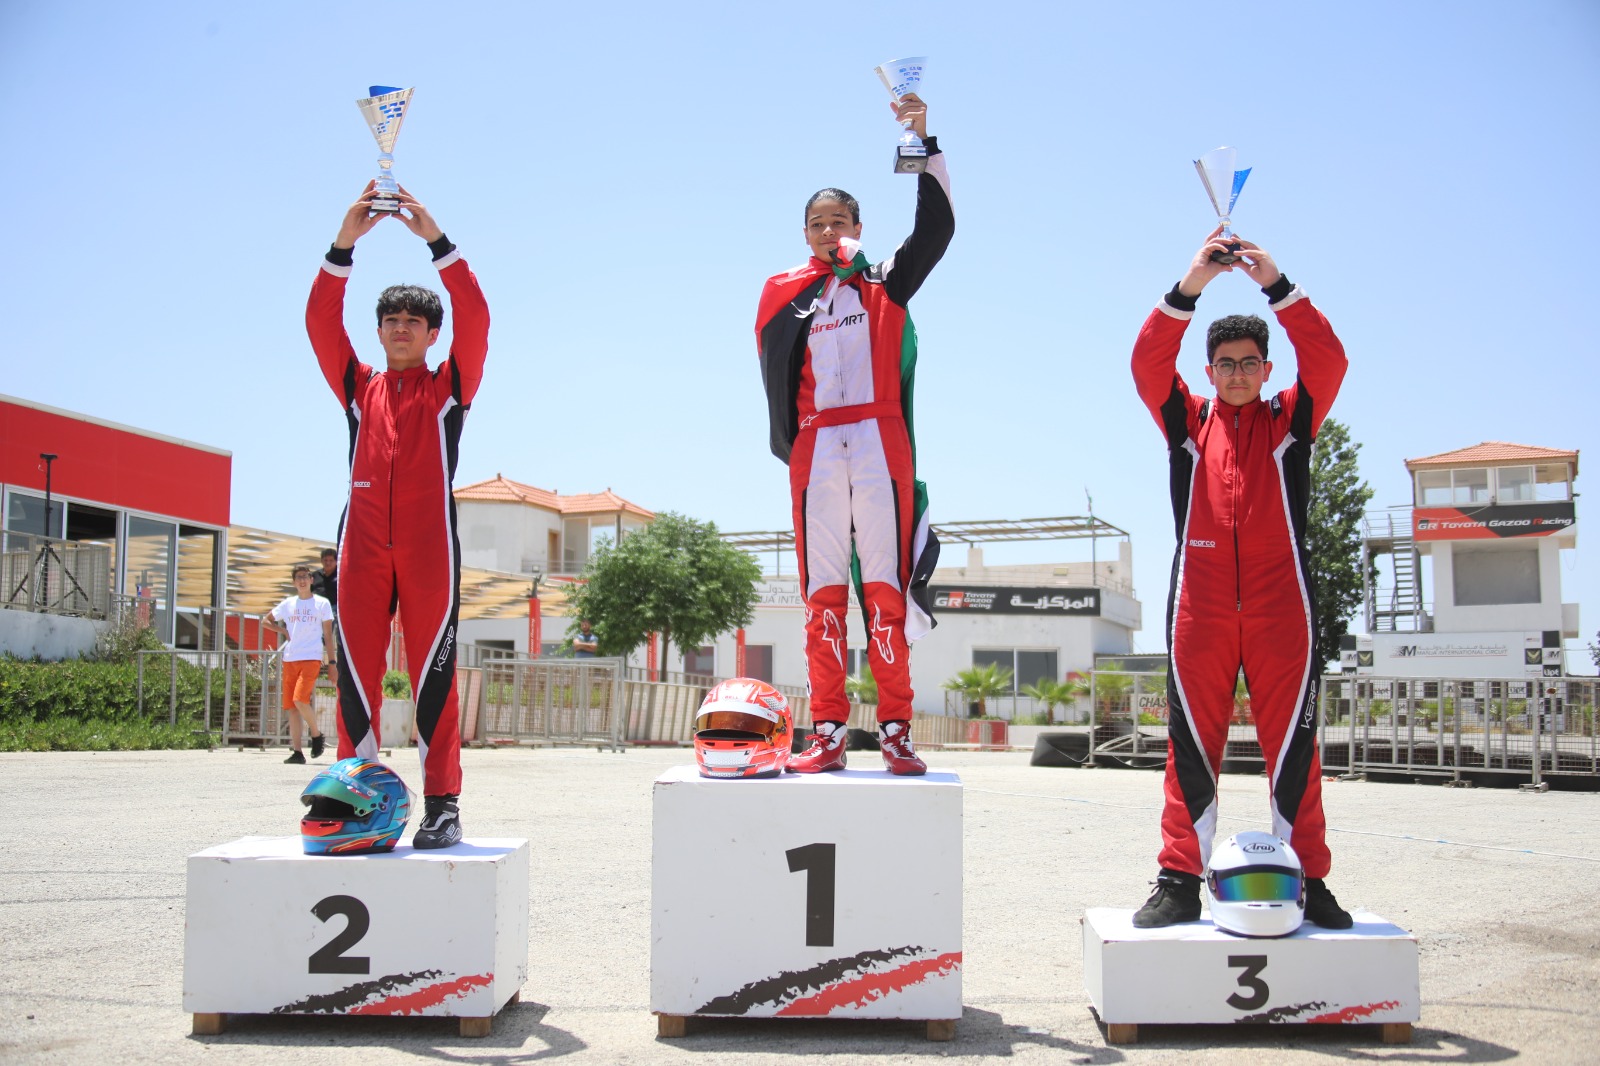 الحموي أولا وناشخو ثانيا وقوقا ثالث في الجولة الثانية من بطولة الأردن لسباقات الكارتينغ